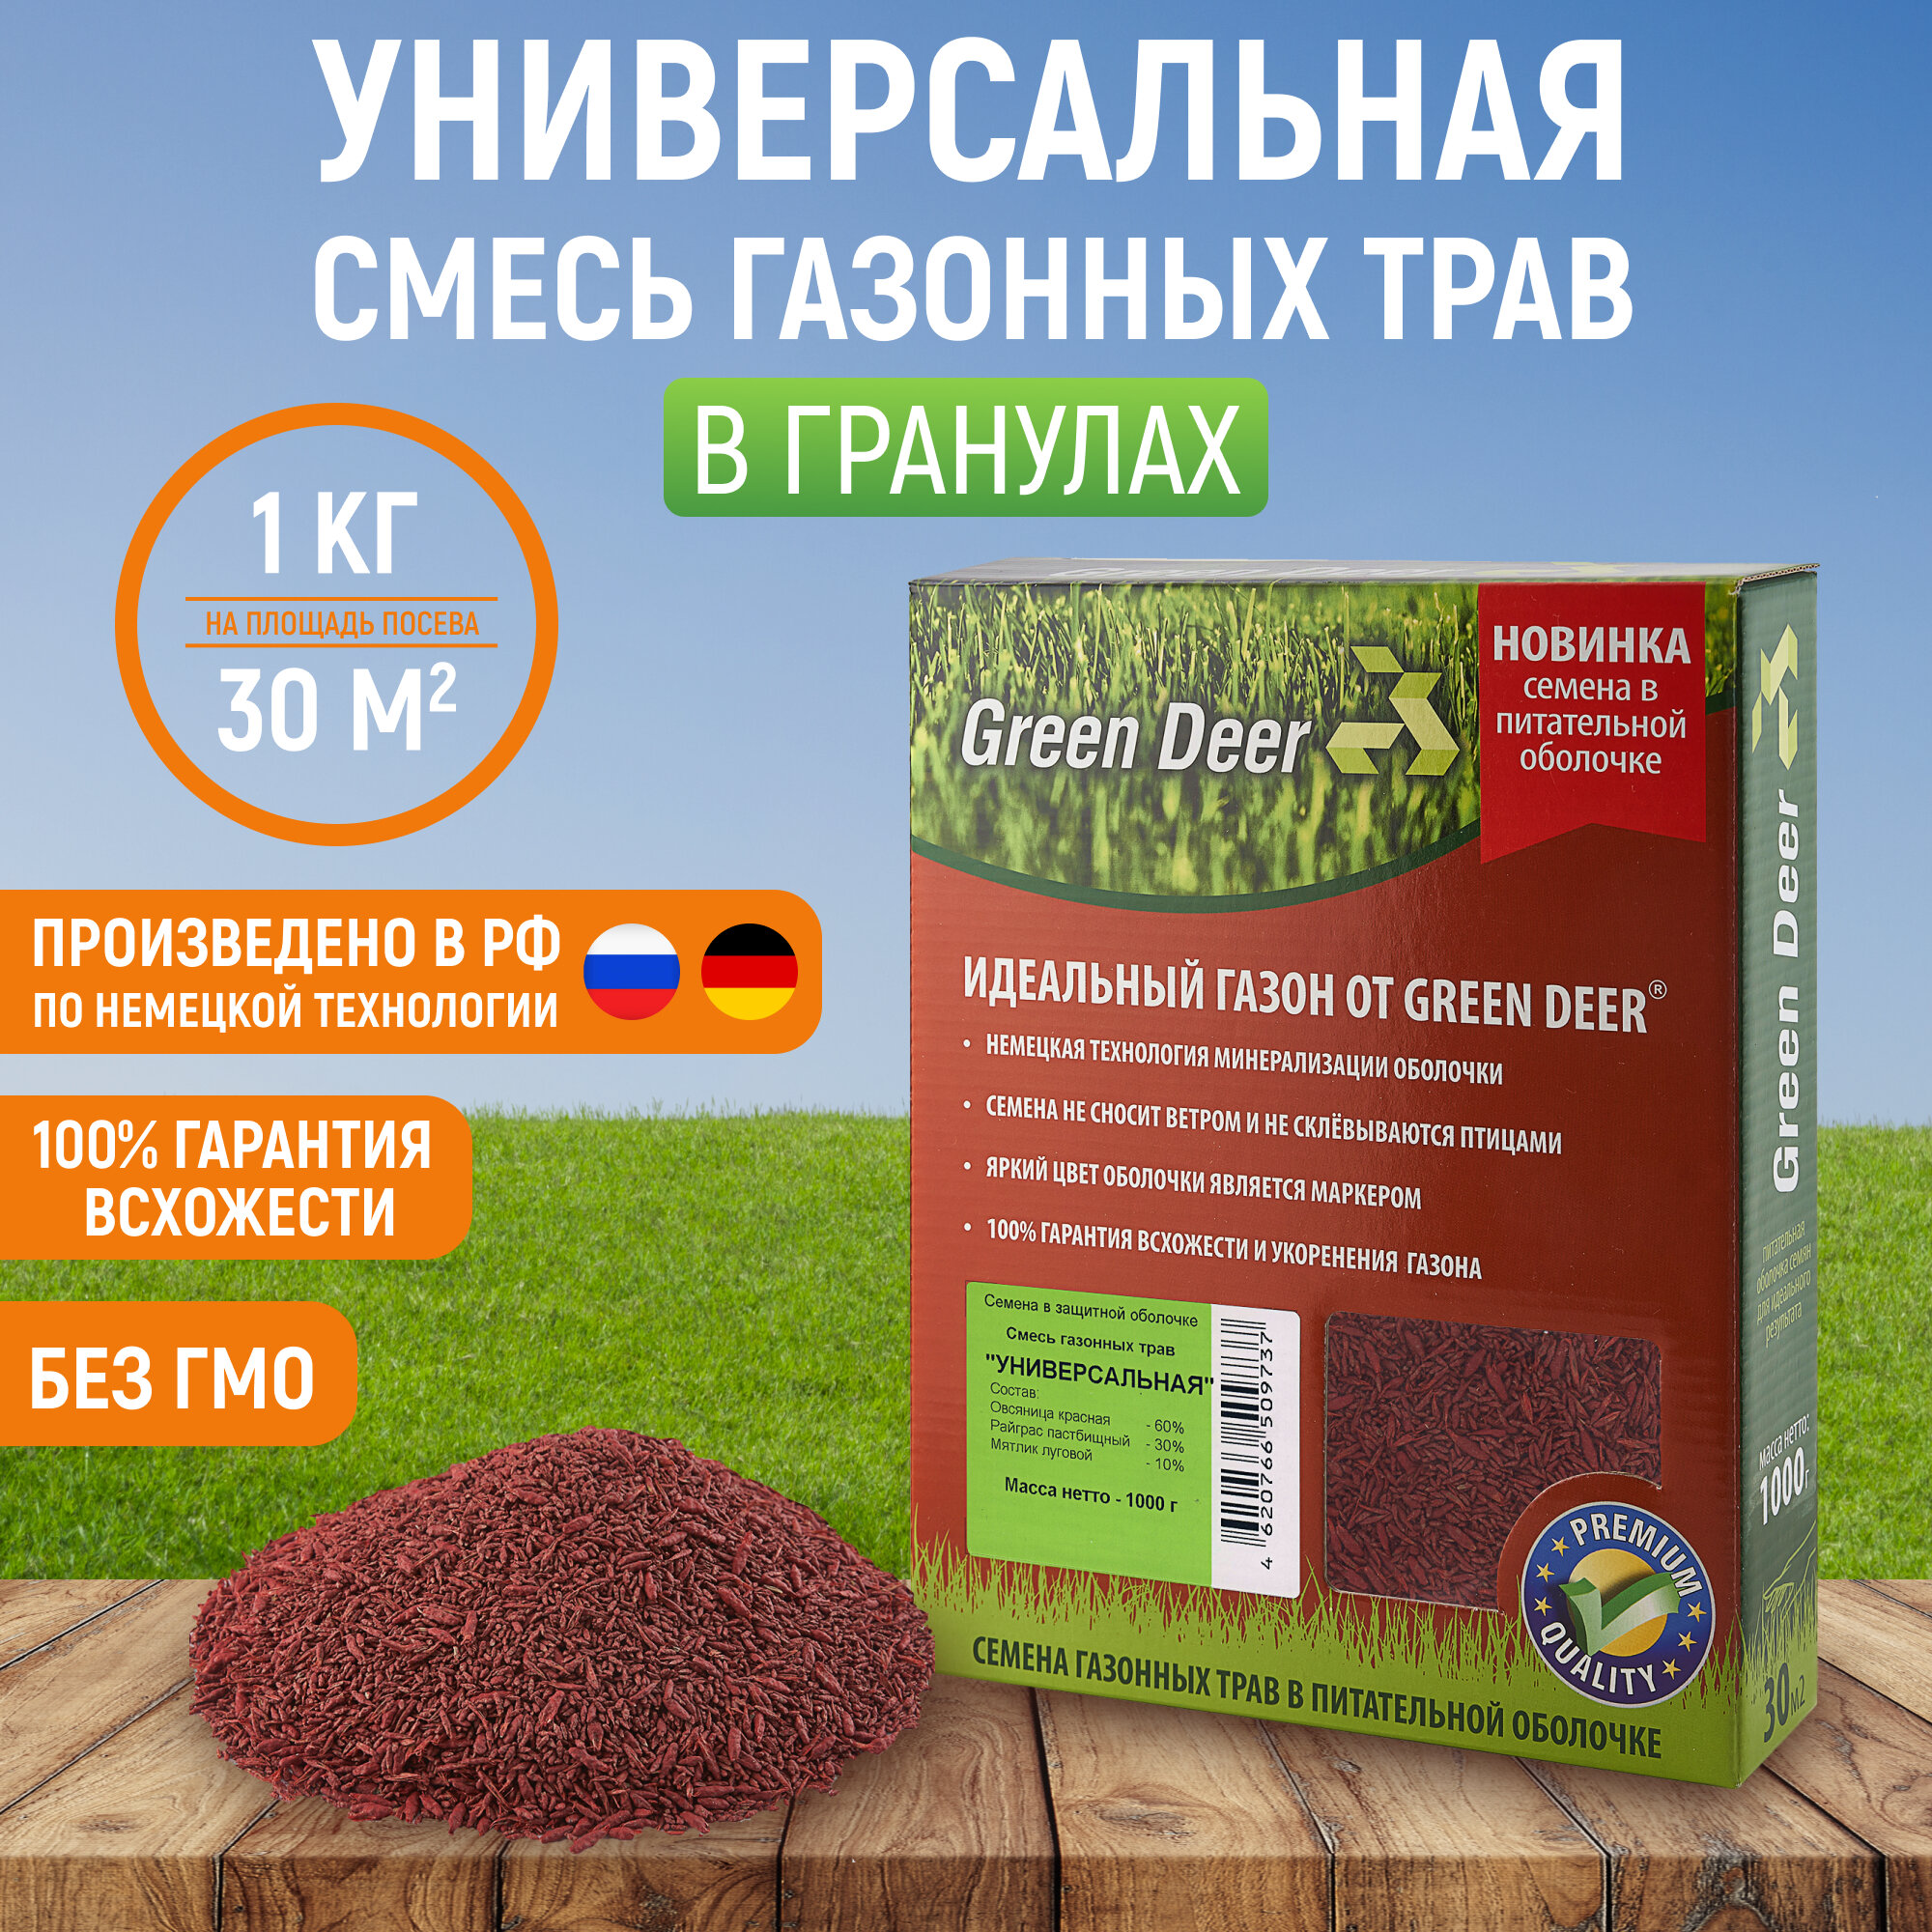 Семена газонных трав "Универсальная" (1 кг) в гранулах